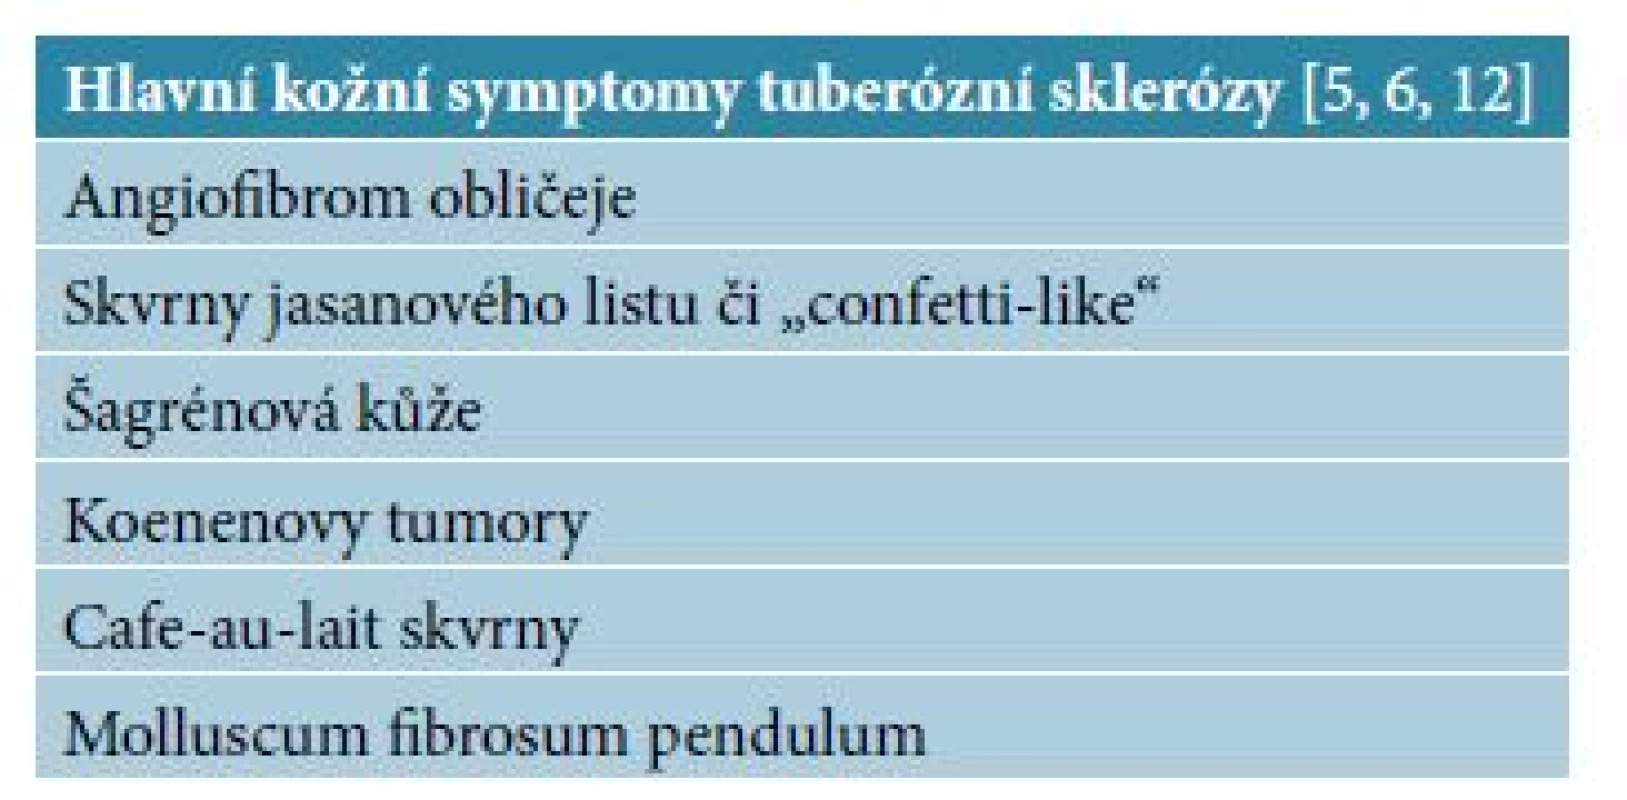 Hlavní kožní symptomy tuberózní sklerózy